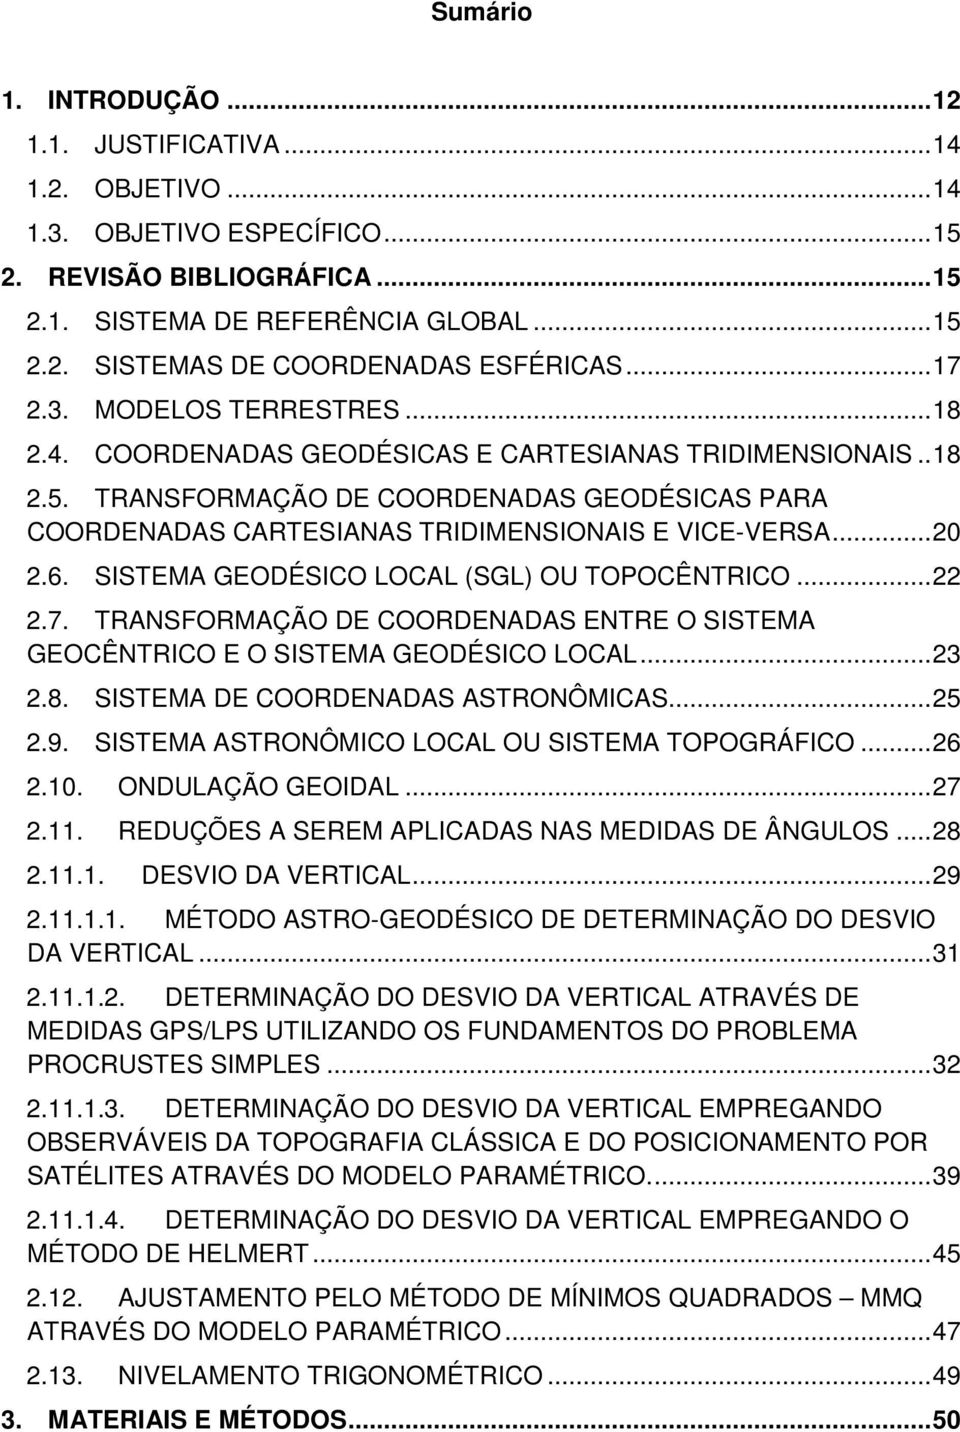 TRANSFORMAÇÃO DE COORDENADAS GEODÉSICAS PARA COORDENADAS CARTESIANAS TRIDIMENSIONAIS E VICE-VERSA... 20 2.6. SISTEMA GEODÉSICO LOCAL (SGL) OU TOPOCÊNTRICO... 22 2.7.